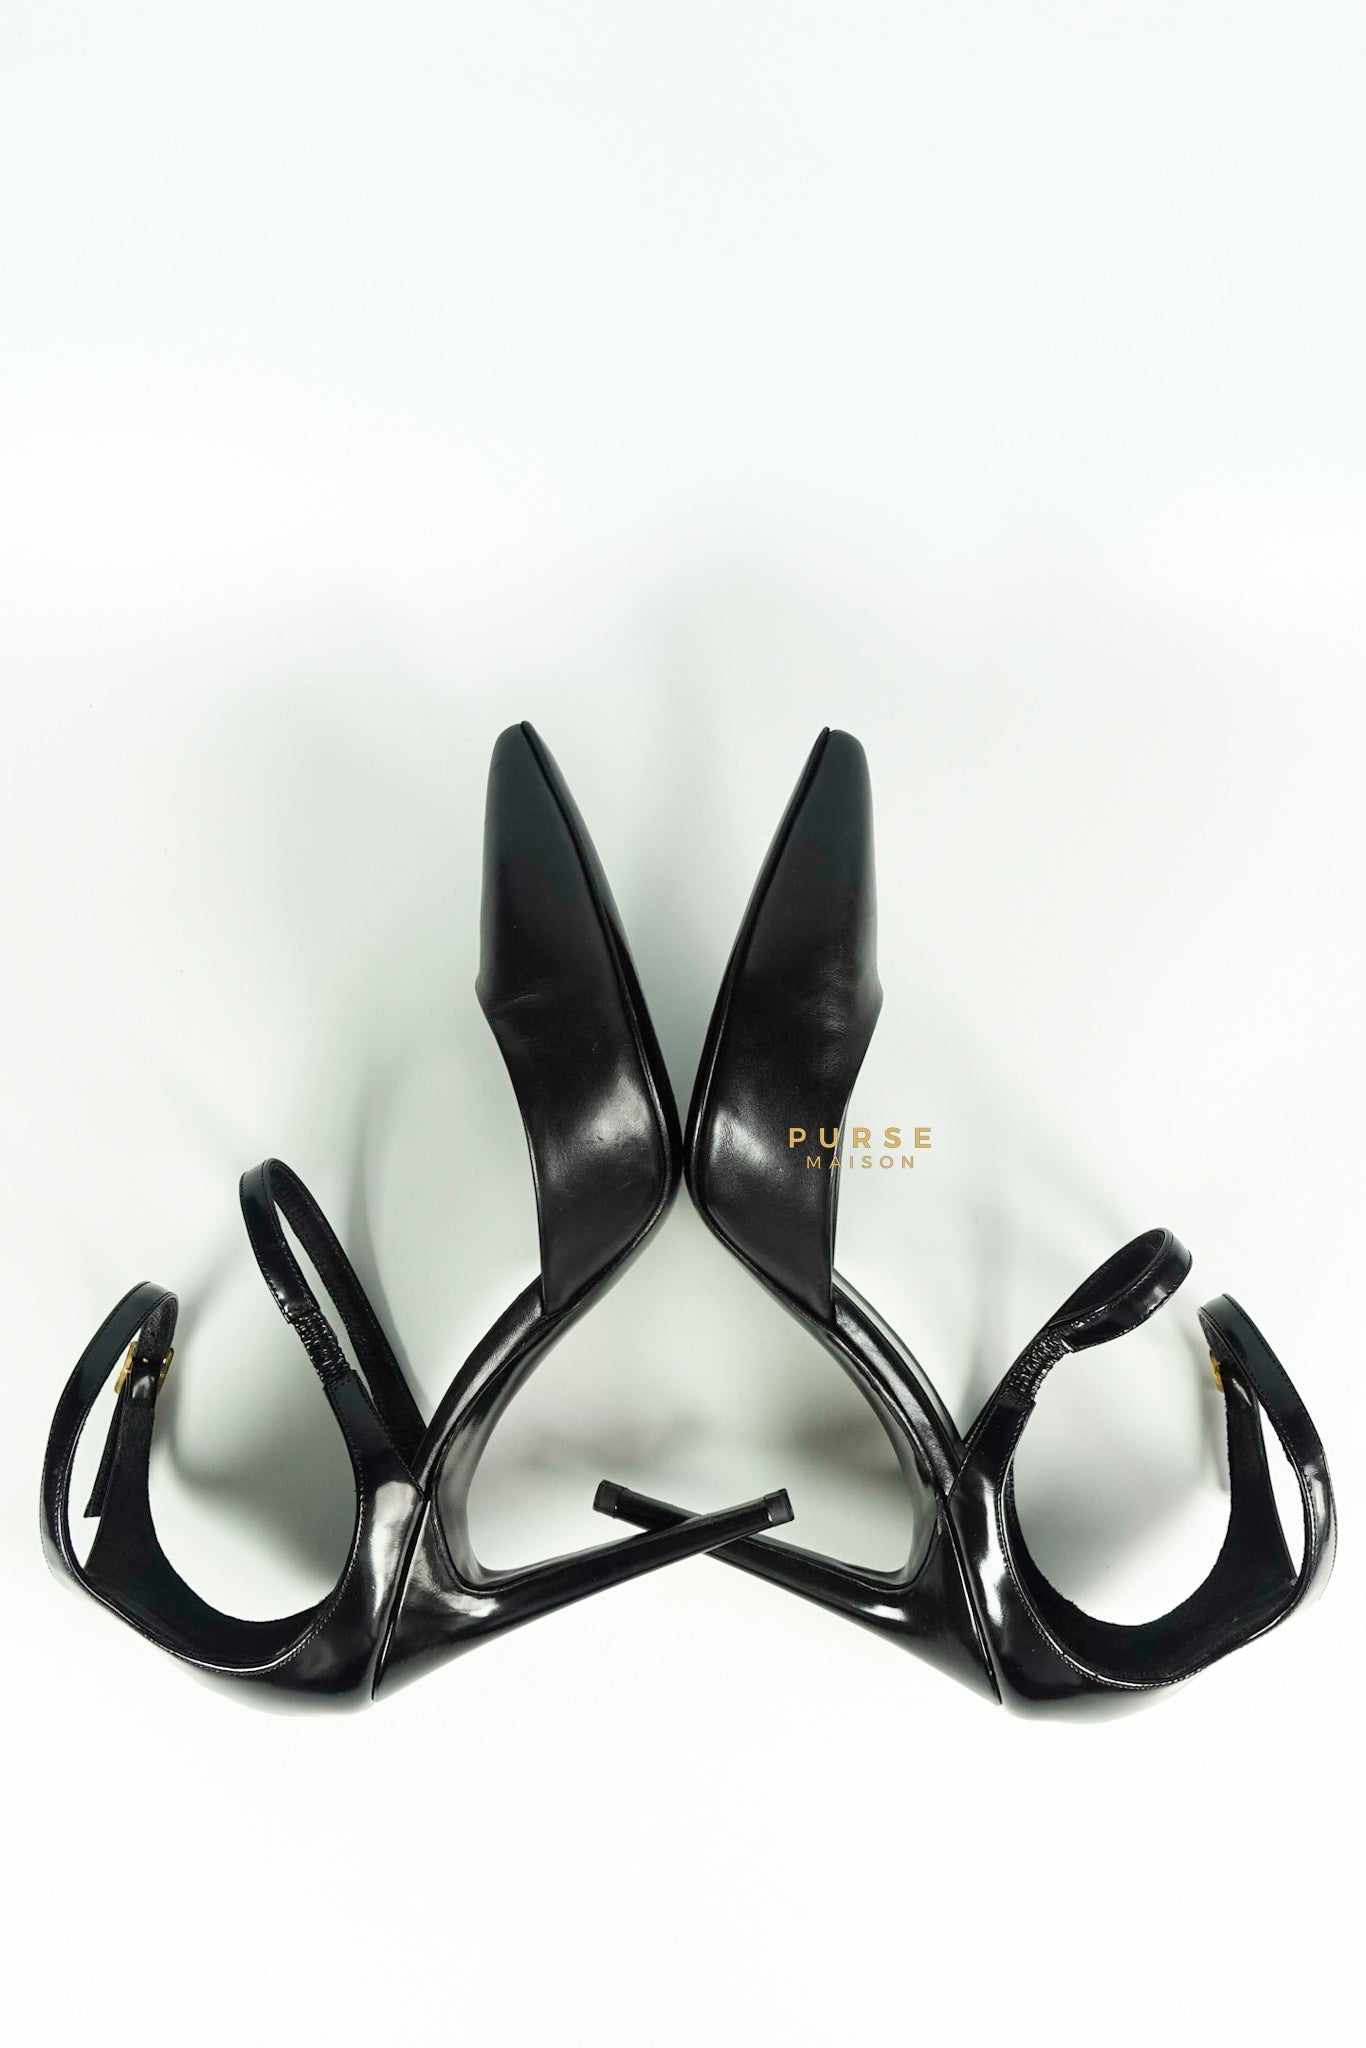 Pierre Hardy Black Leather Strap Pump Shoes (Size 37 EUR, 25cm)